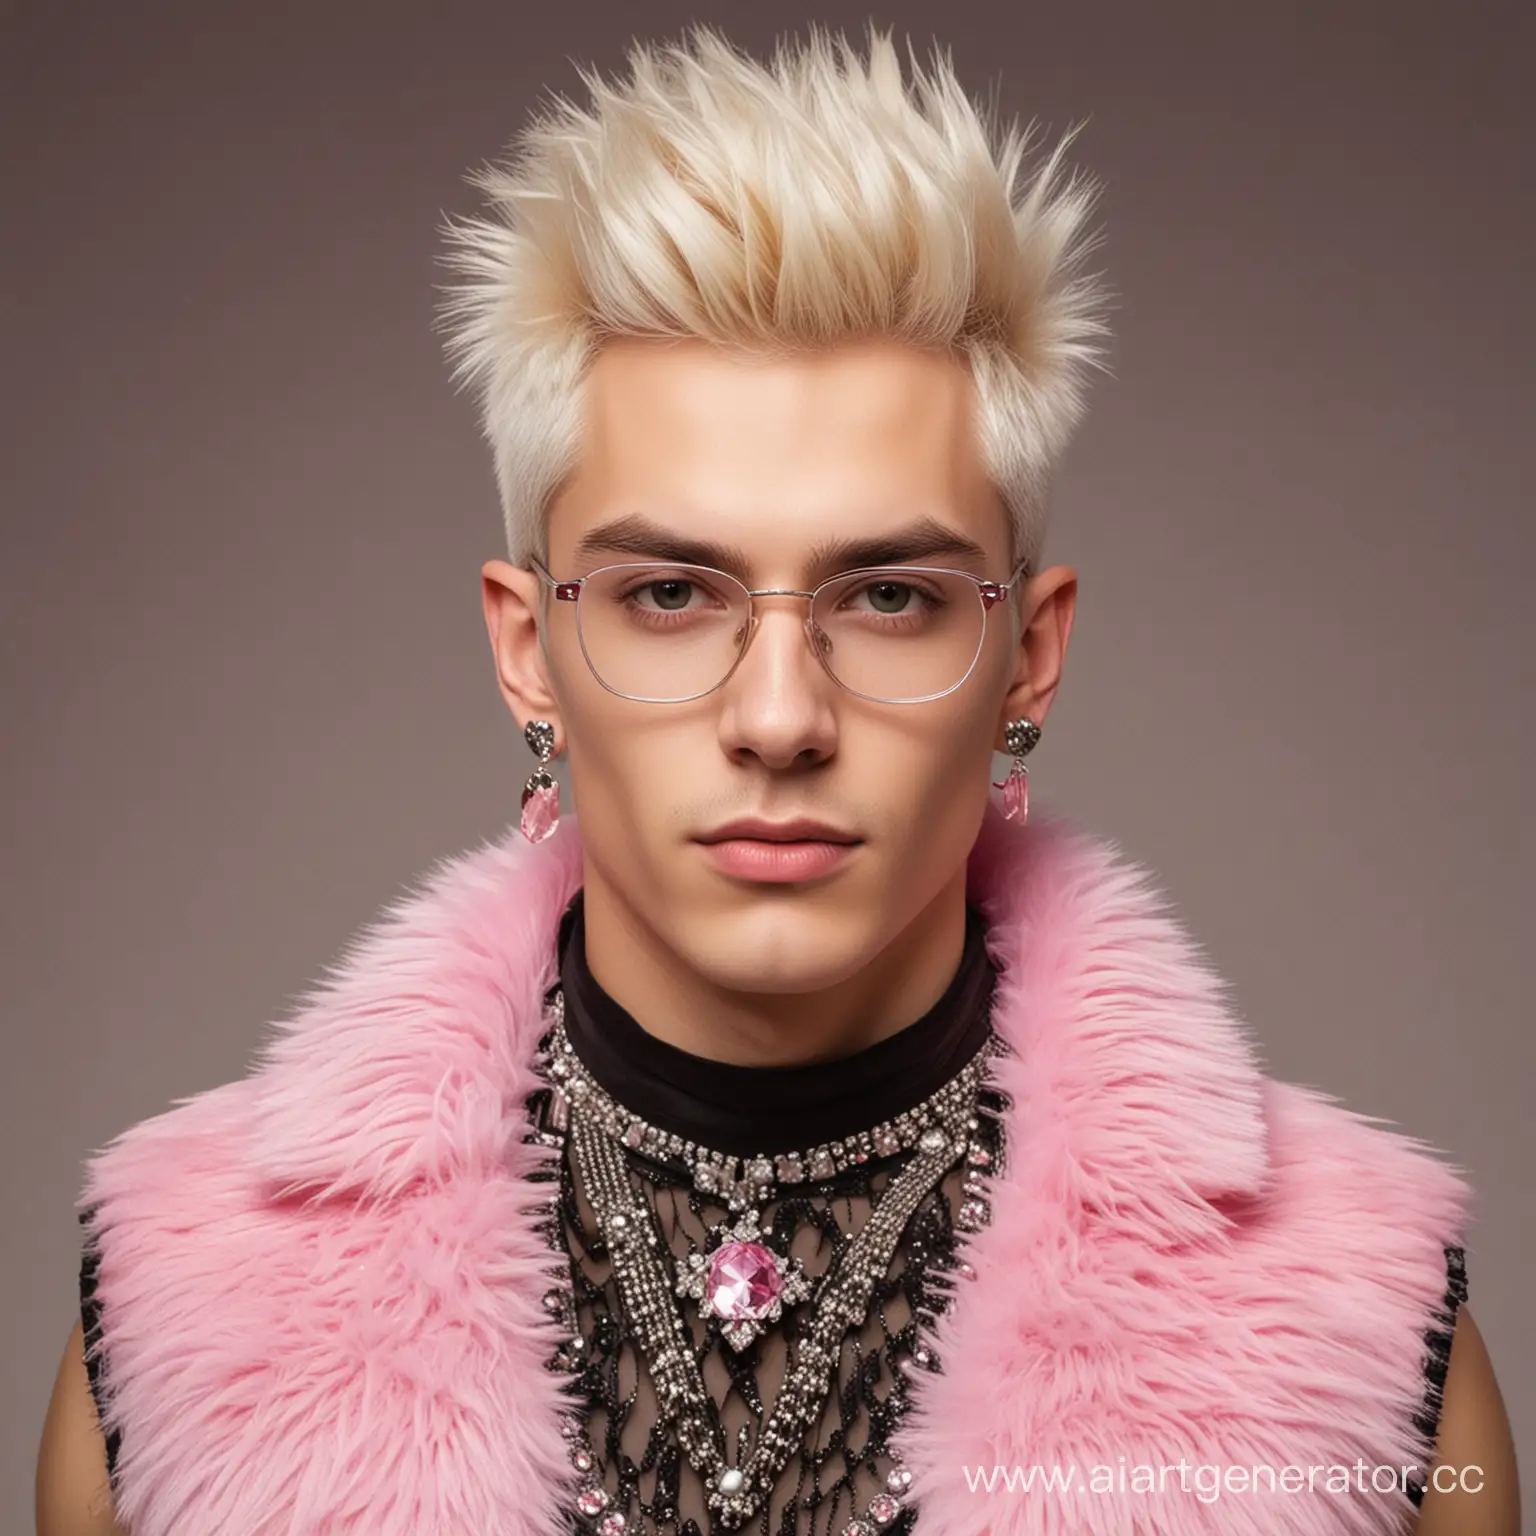 Портрет молодого человека по имени Велимир Квашнитич. У него обесцвеченные волосы, серьги в ушах, очки со стразами. Одет он в майку-сеточку, а также жилет с воротником из розового меха.